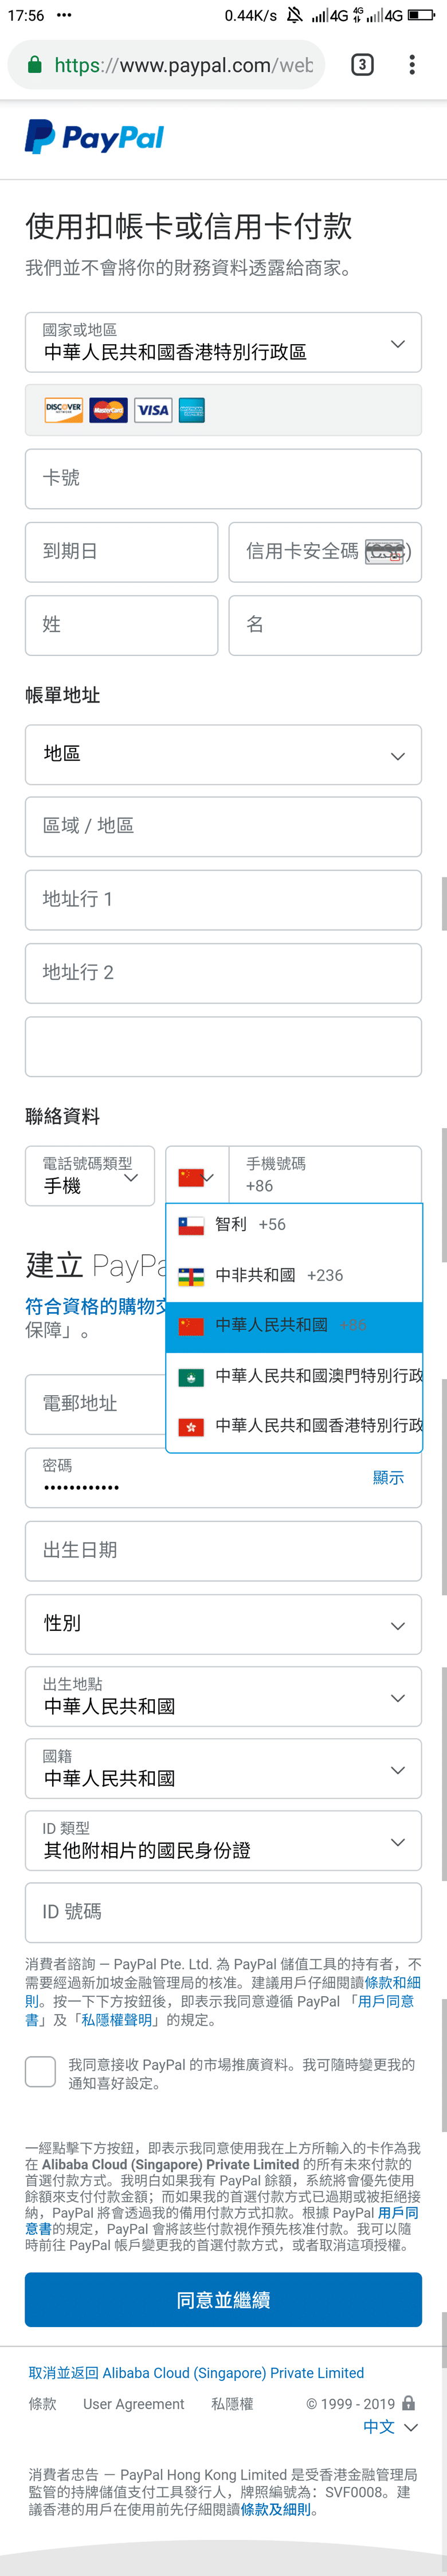 注册香港PayPal并绑定大陆手机号方法插图2